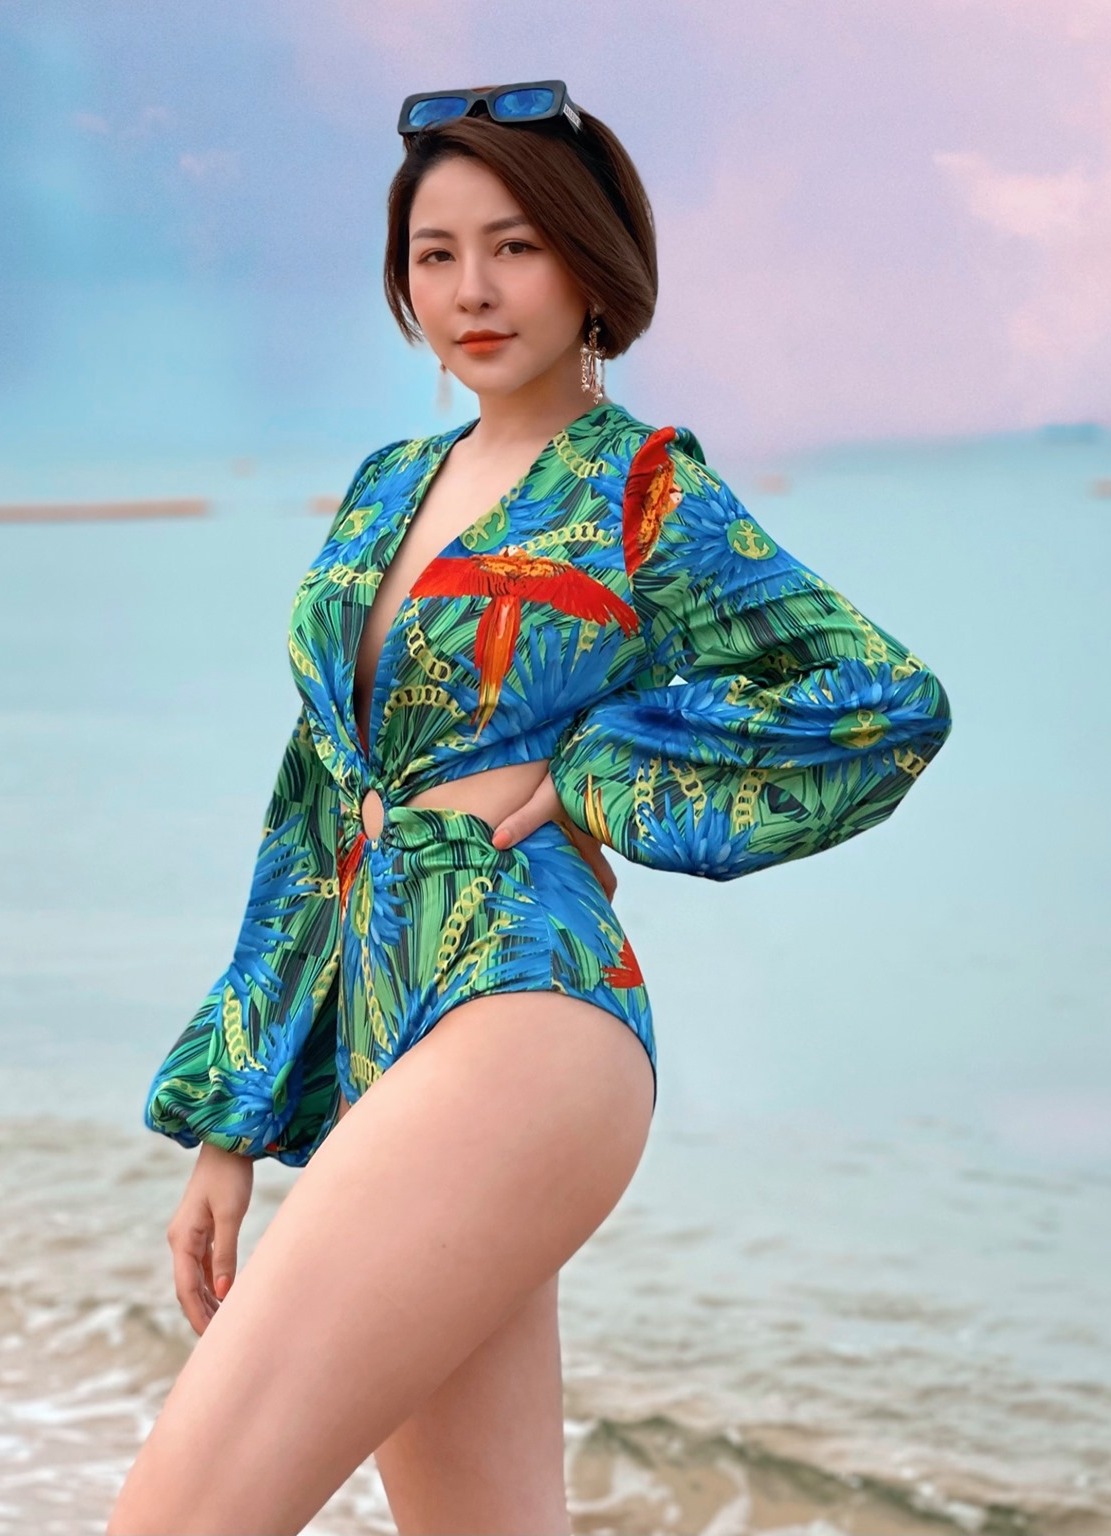 Trâm Anh khoe dáng nóng bỏng với bikini trên bãi biển - 9